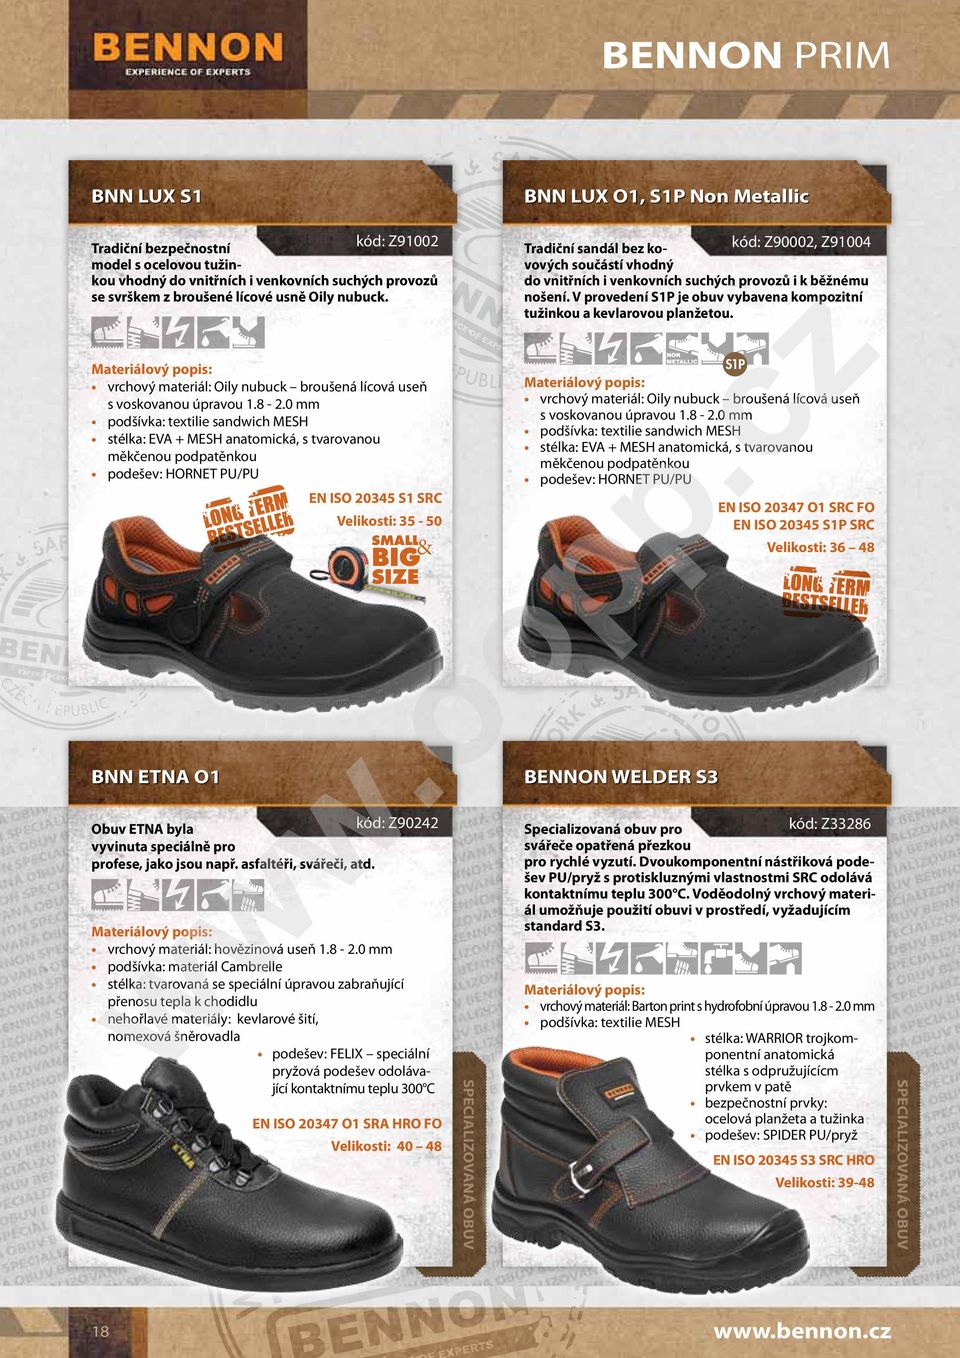 V provedení S1P je obuv vybavena kompozitní tužinkou a kevlarovou planžetou. cz BNN LUX S1 S1P vrchový materiál: Oily nubuck broušená lícová useň s voskovanou úpravou 1.8-2.